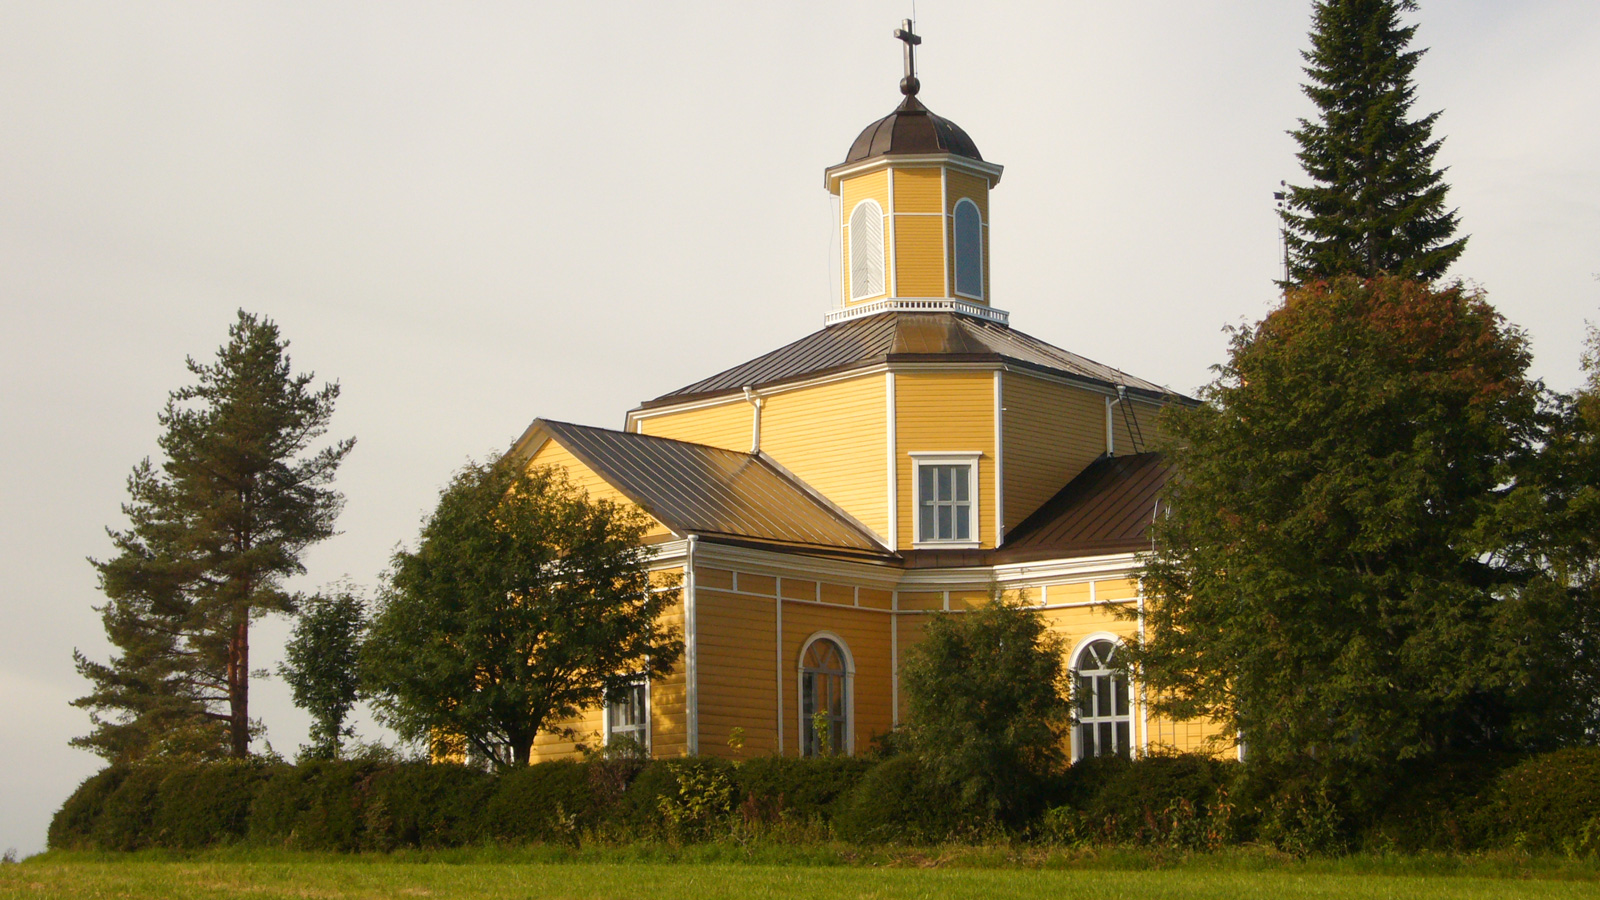 Lehtimäen kirkon ulkomaalaus - Arkkitehtitoimisto Tuomela, Alajärvi